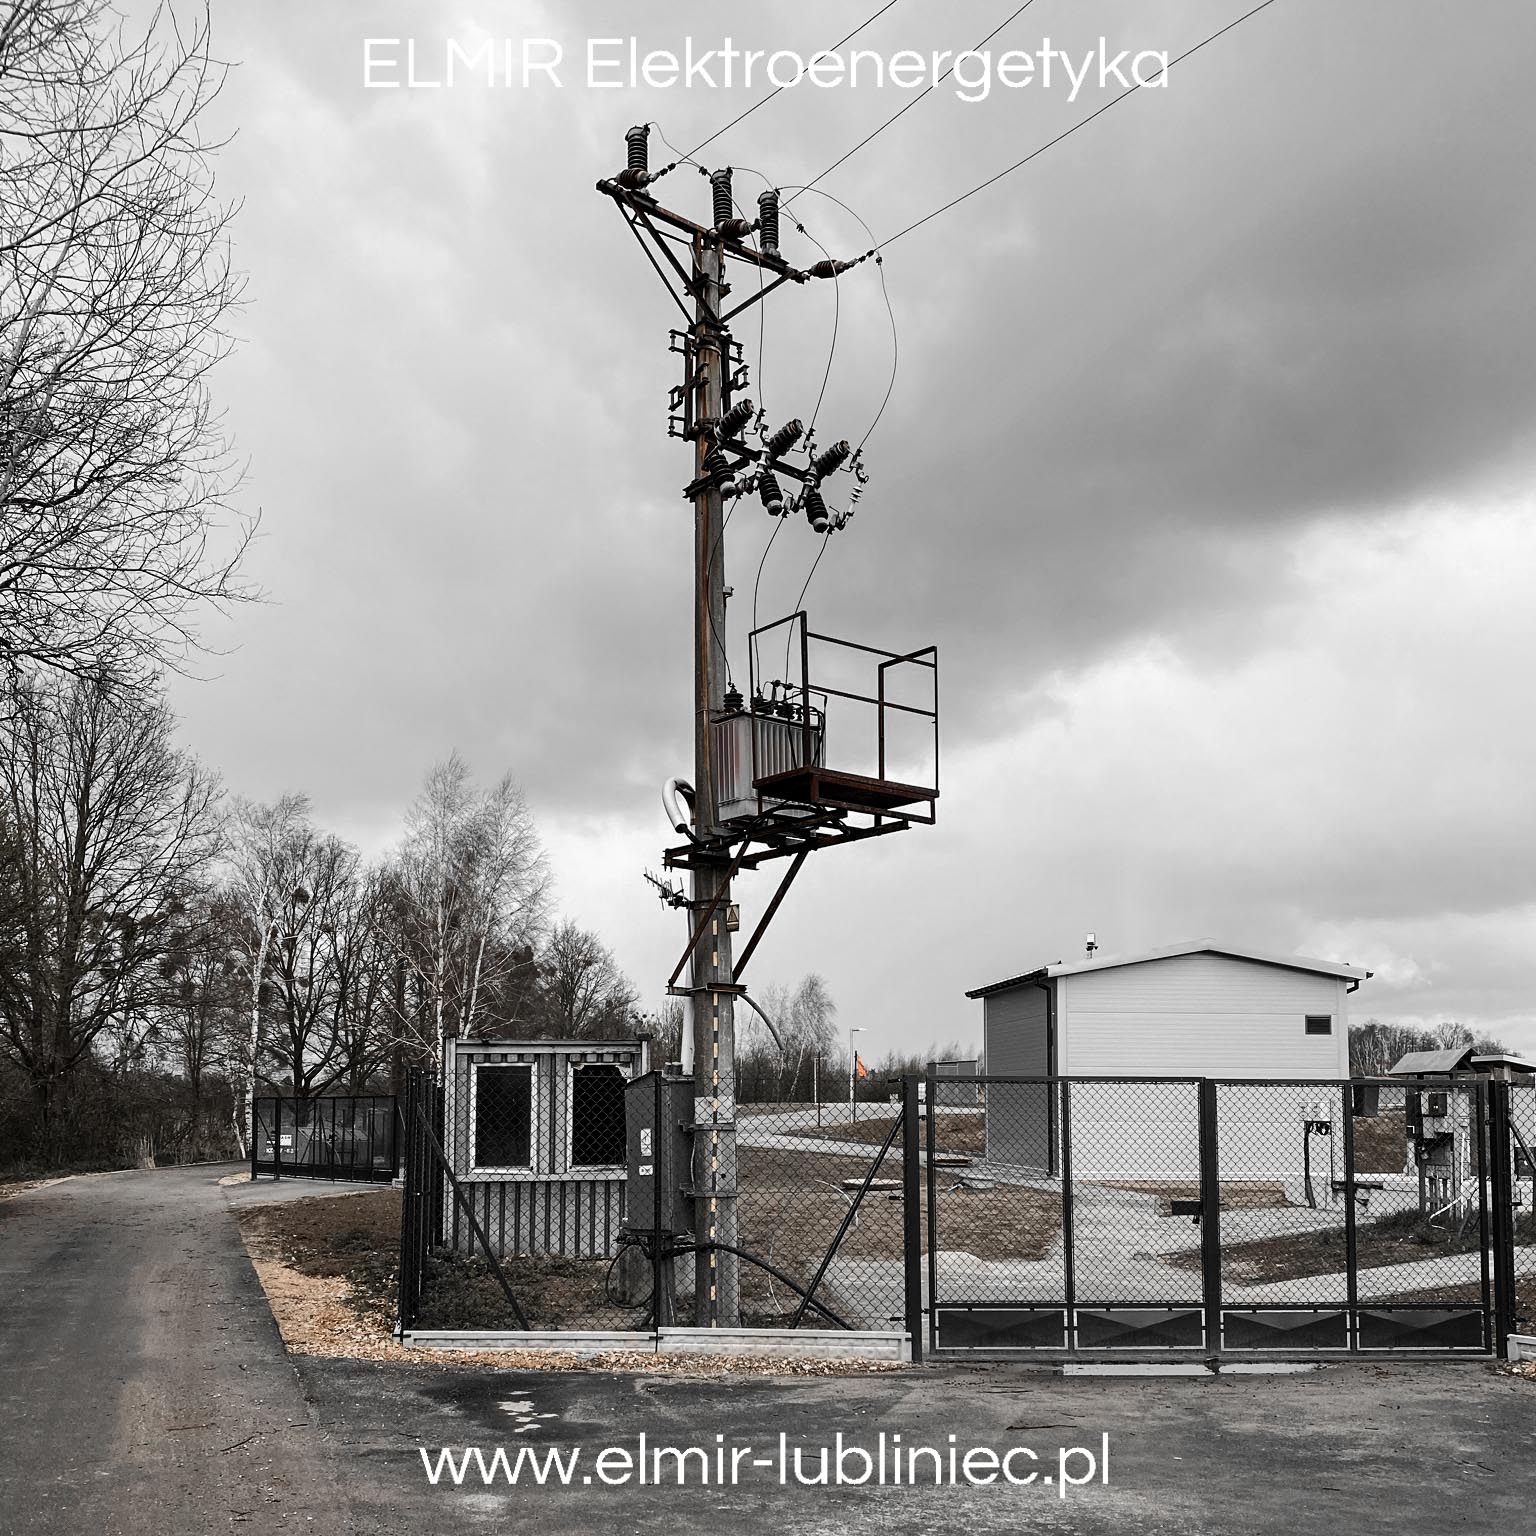 ELMIR Elektroenergetyka Realizacja Lubliniec